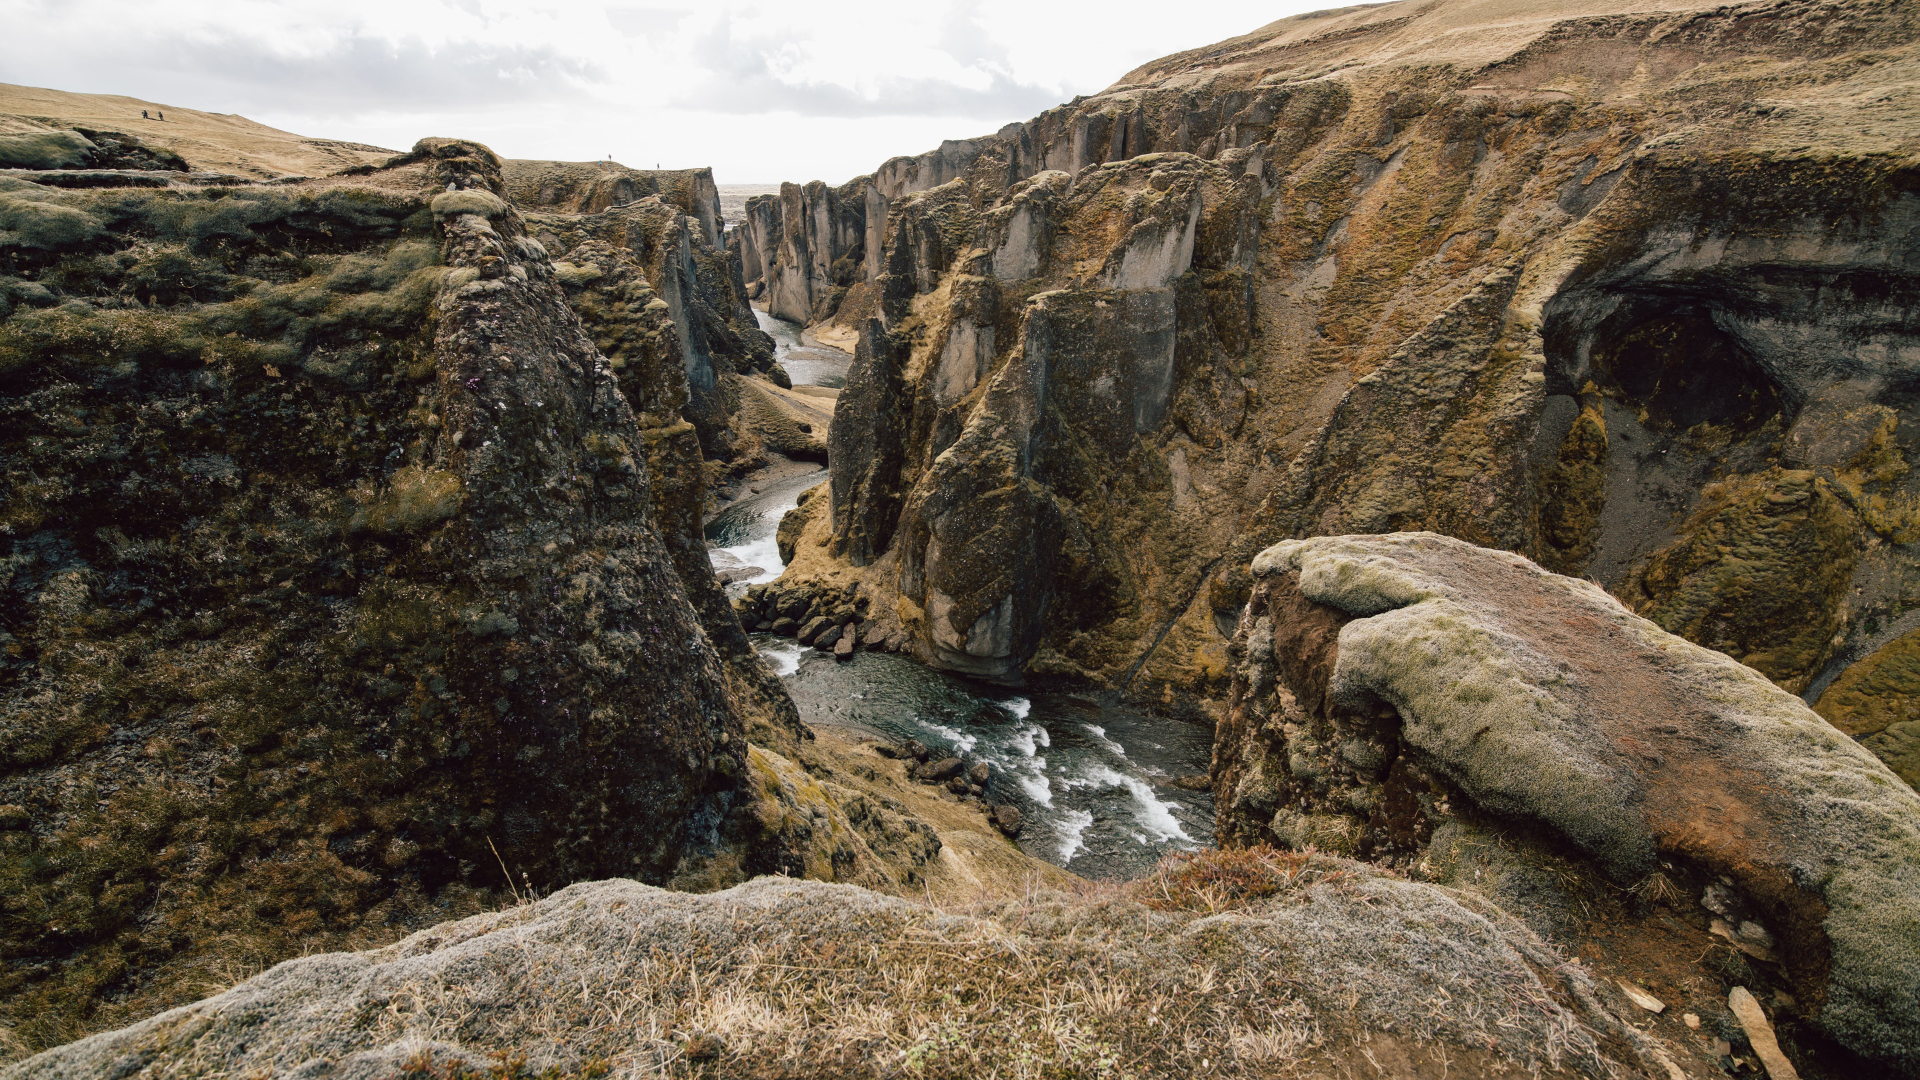 Thjorsardalur Canyon, a hidden gem in Iceland.